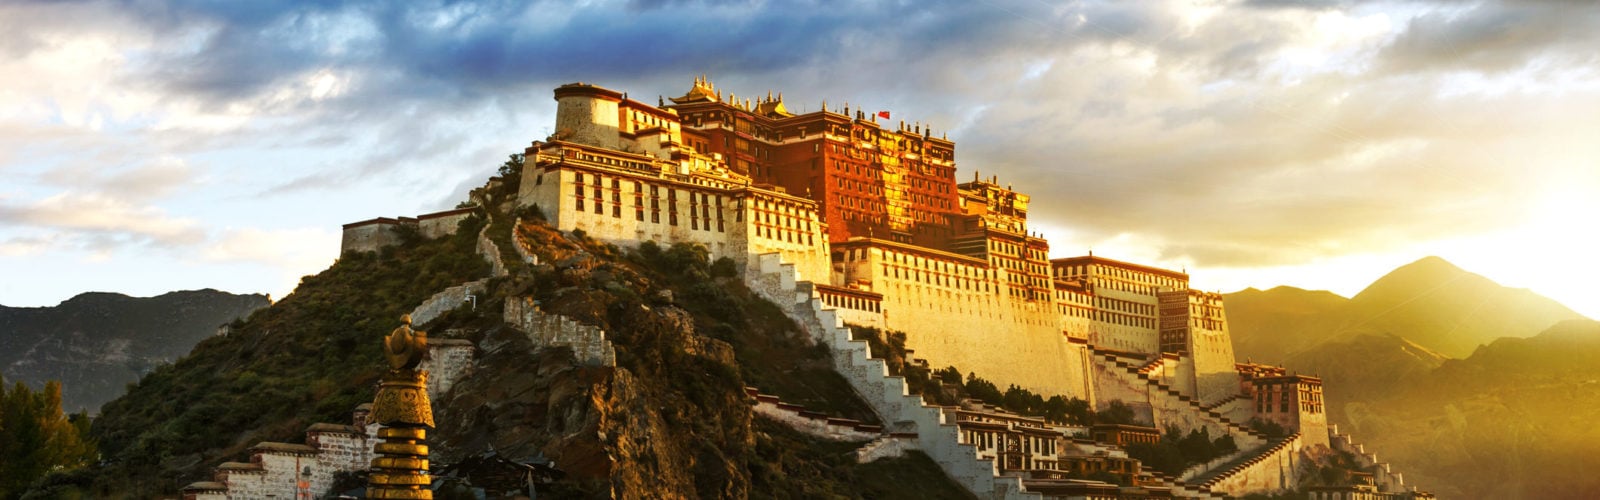 potala-palace-lhasa-tibet